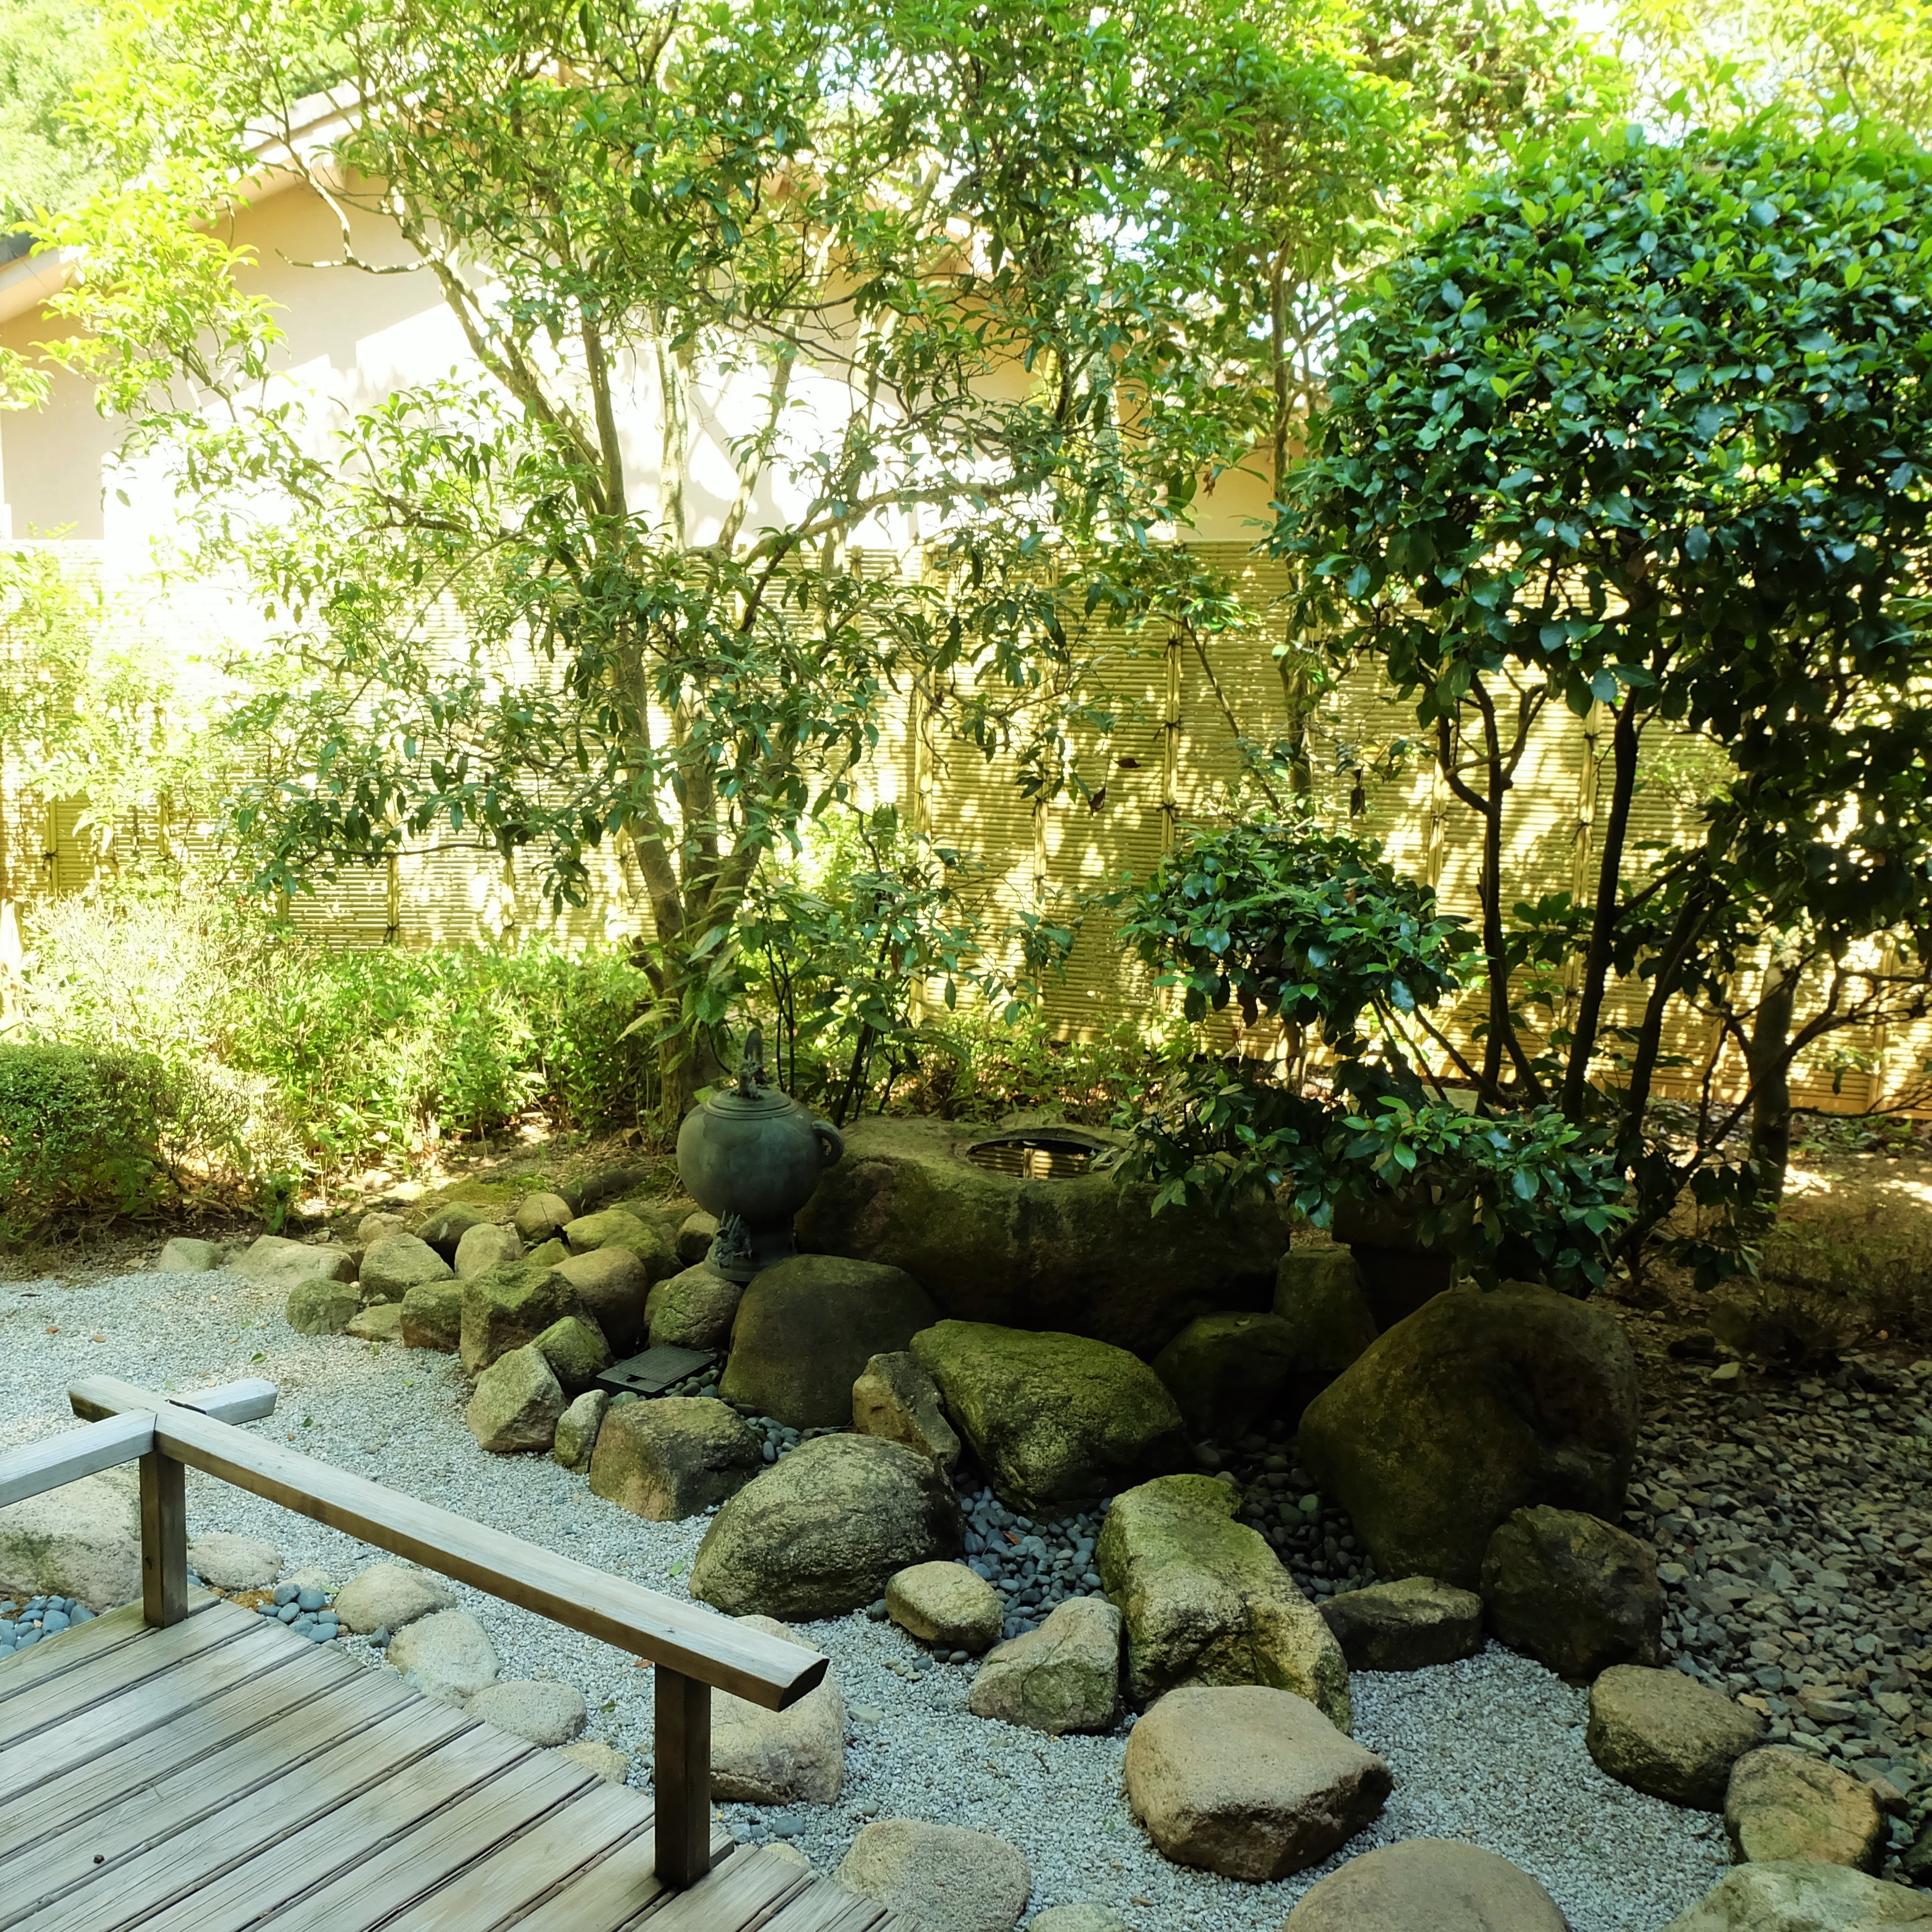 有露天浴池 ◆貴賓室 極水亭-桐壺- ◆在私家花園裡，您可以享受日本花園的氛圍。